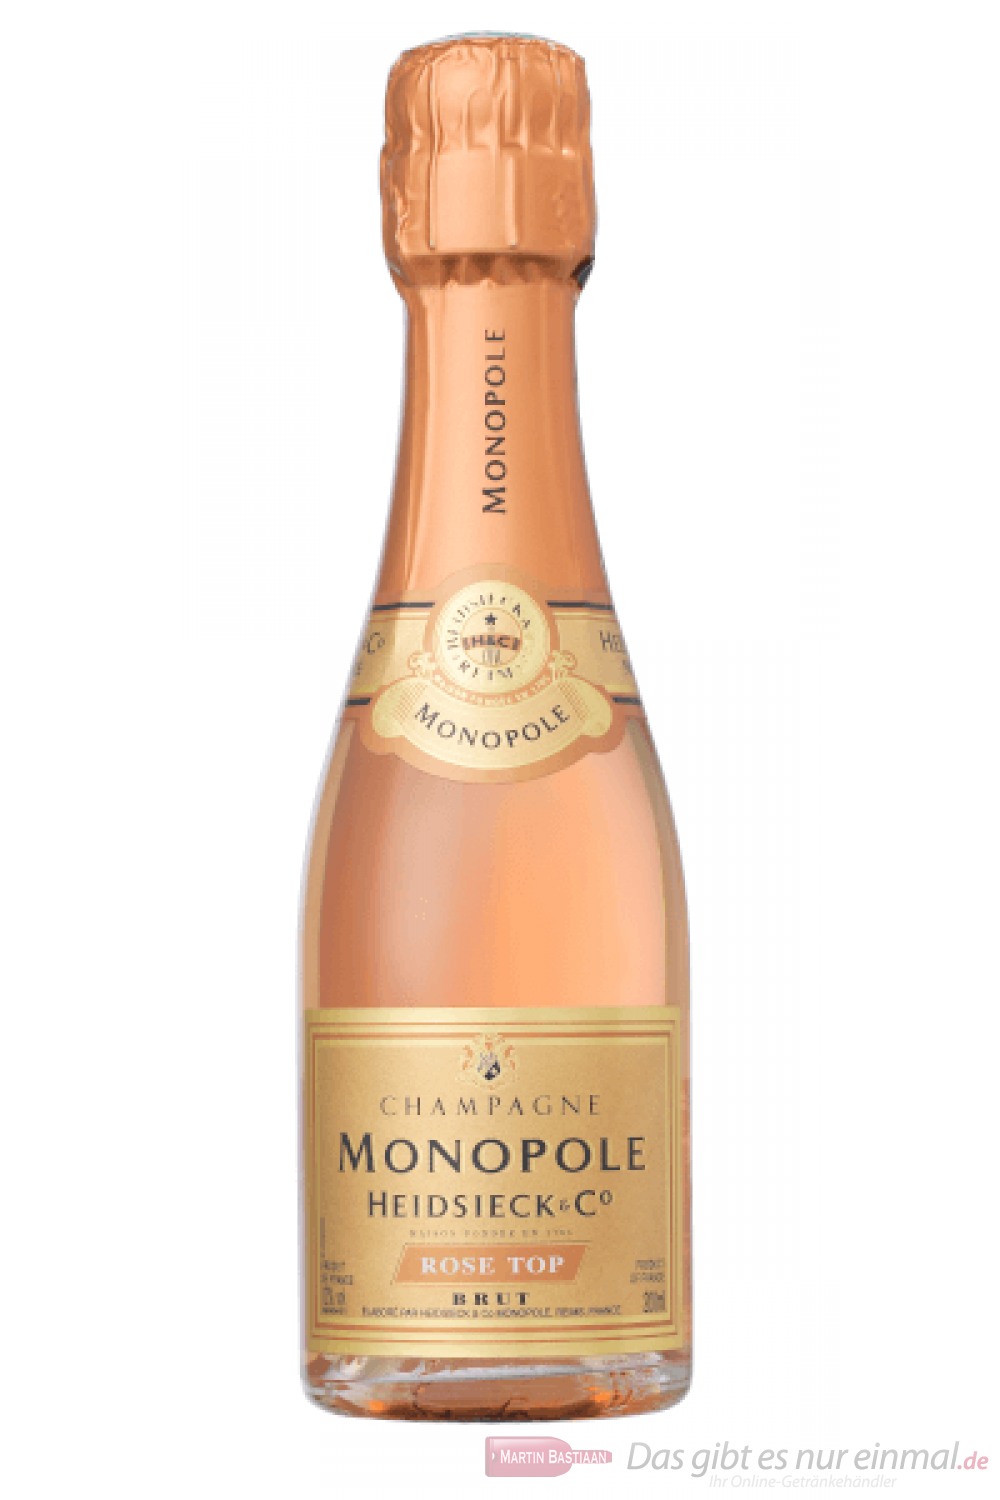 Heidsieck Monopole Rosé Top Brut Champagner 0,2l Piccolo